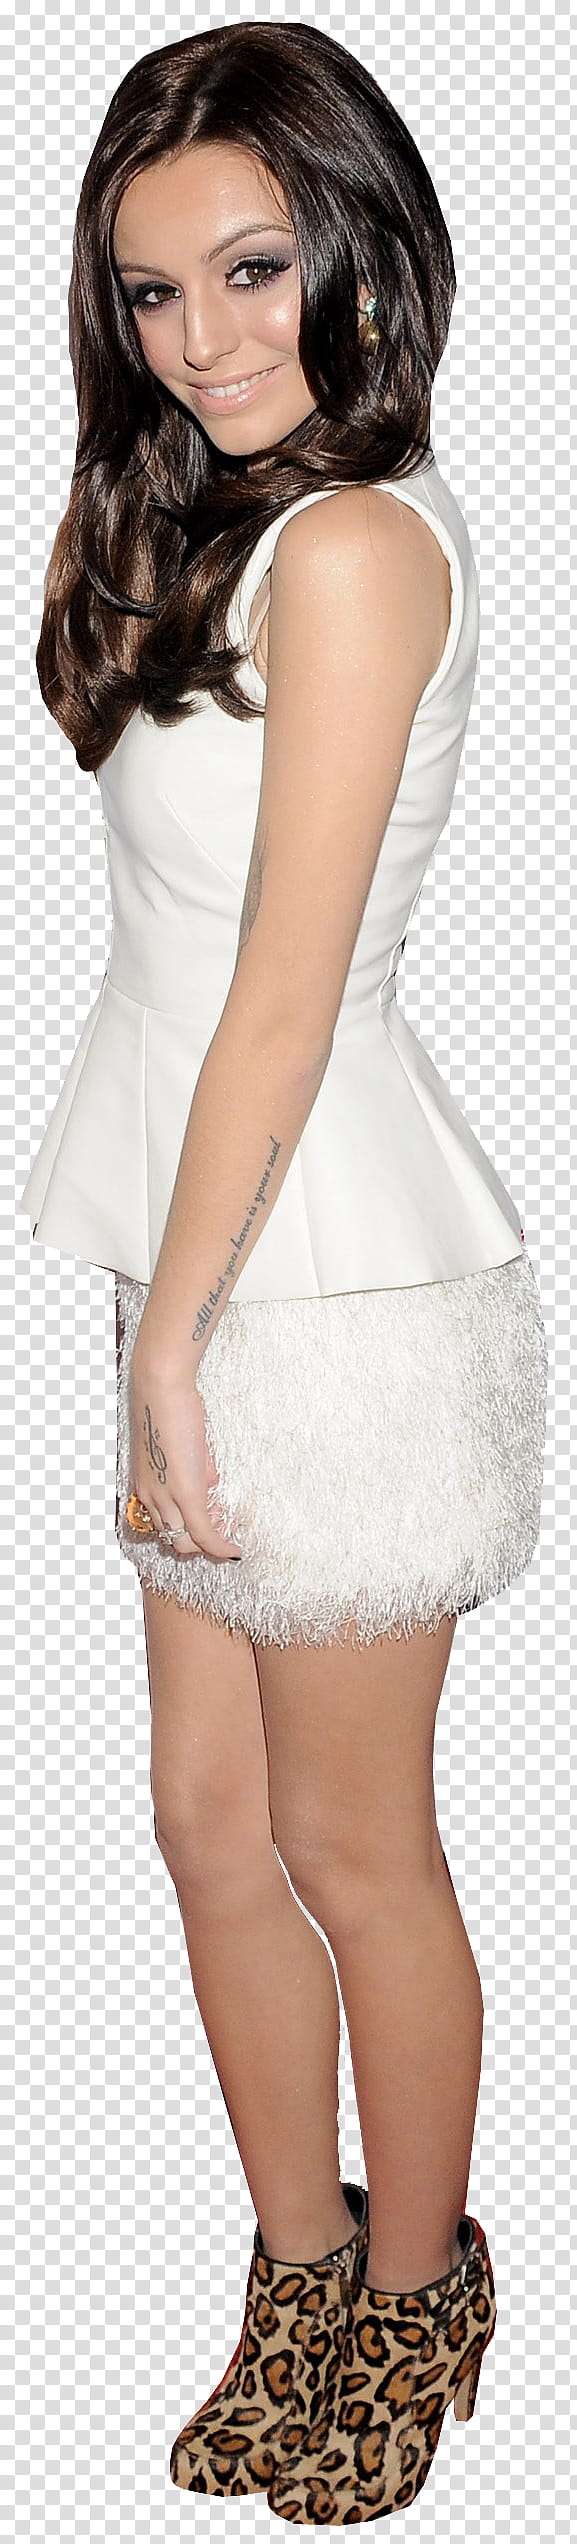  De Cher Lloyd HD, woman wearing white peplum dress transparent background PNG clipart